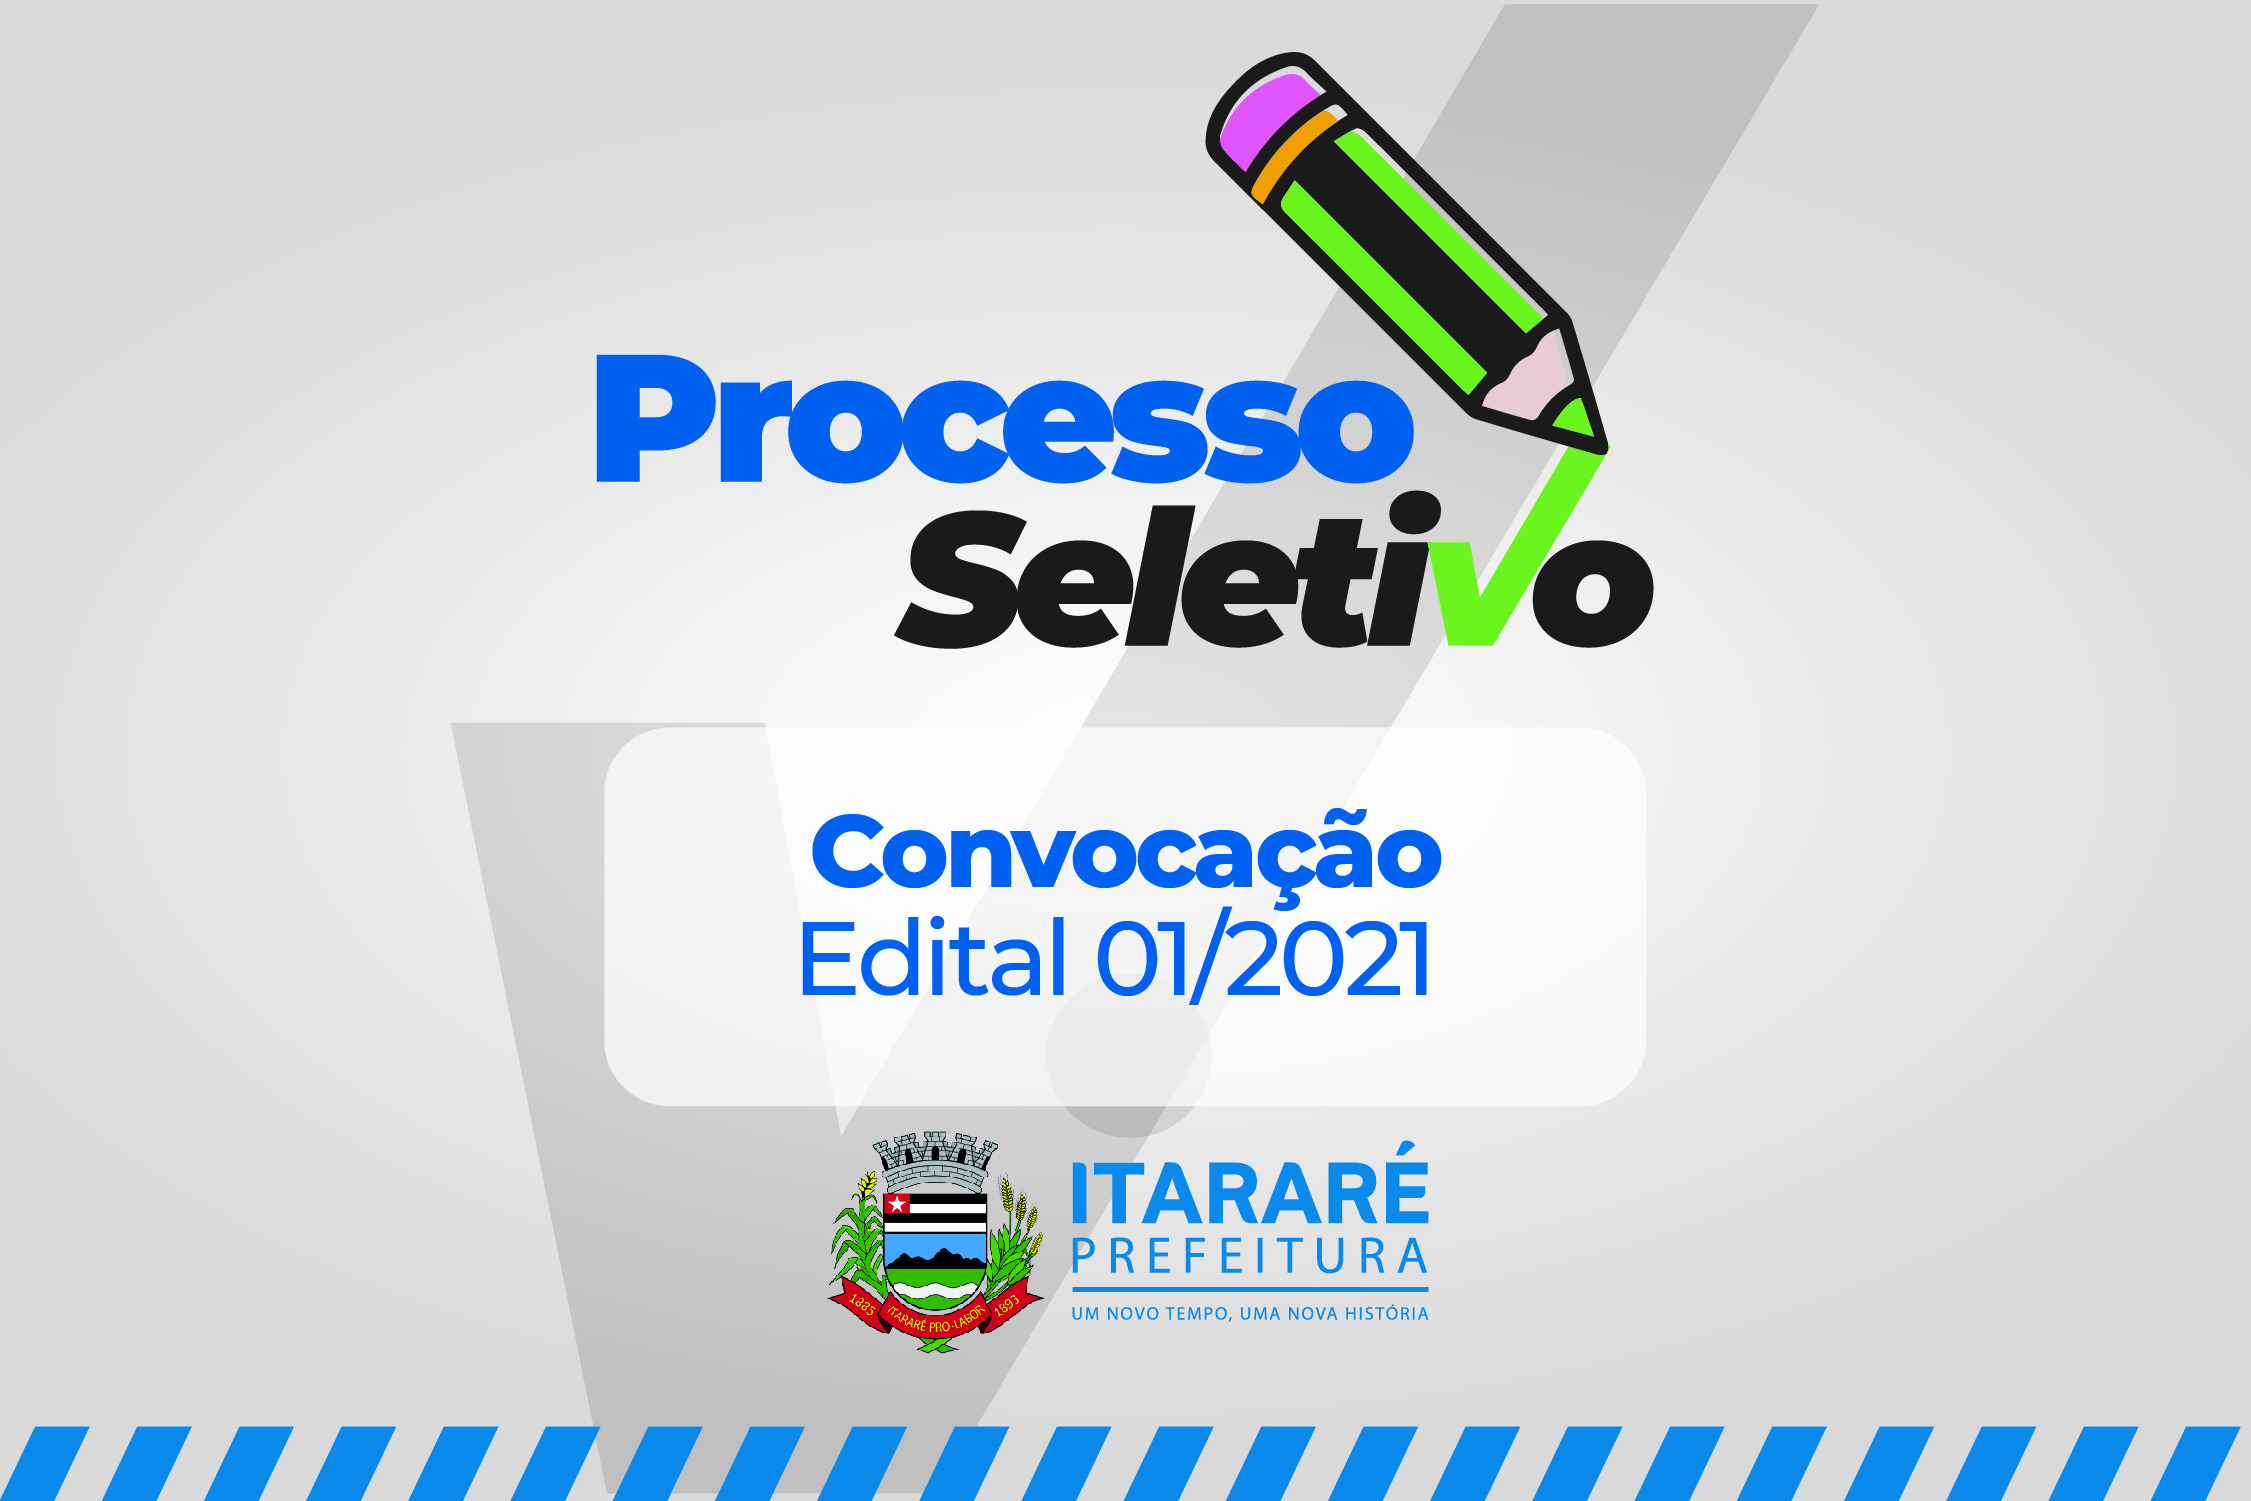 Convocação: Prefeitura de Itararé (SP) divulga novo edital aos aprovados no Processo Seletivo para estagiários